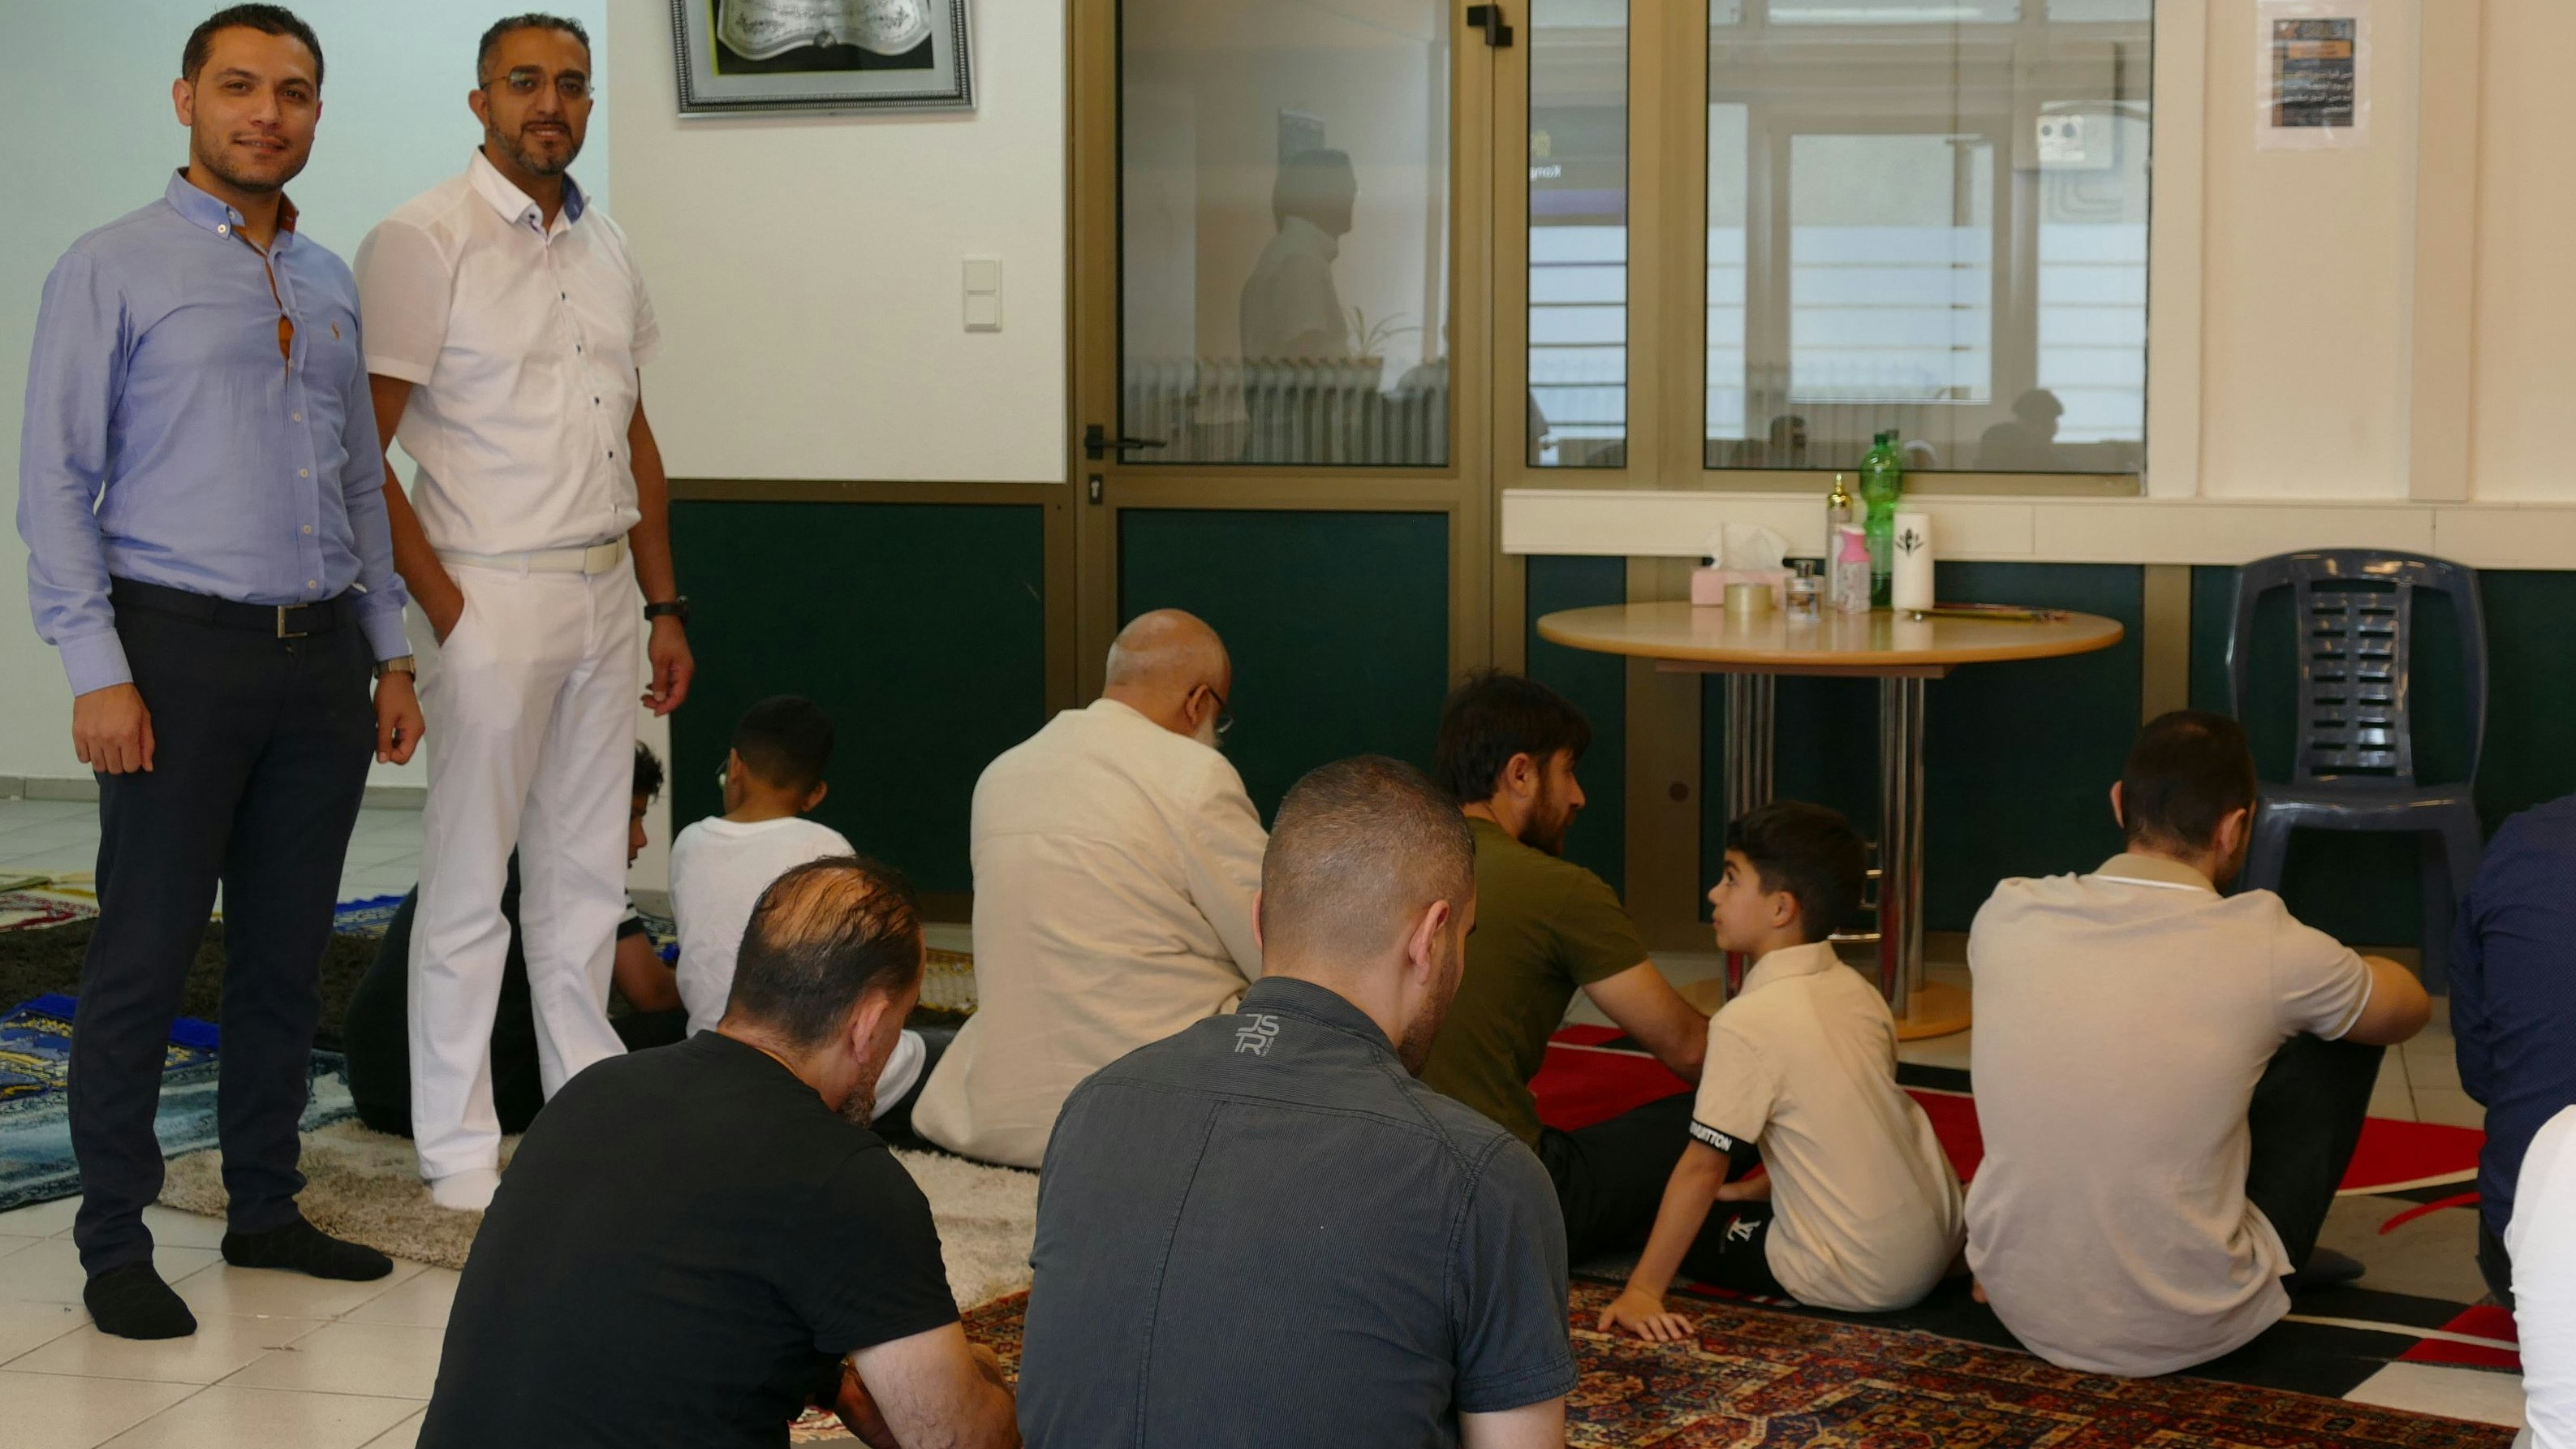 Vorbereitung auf das Gebet: Anas Alneimi (stehend links) und Mohamad Fanadka (rechts) freuen sich, dass die Islamische Gemeinschaft zu Friesoythe jetzt eigene Räume nutzen kann. Foto: Stix